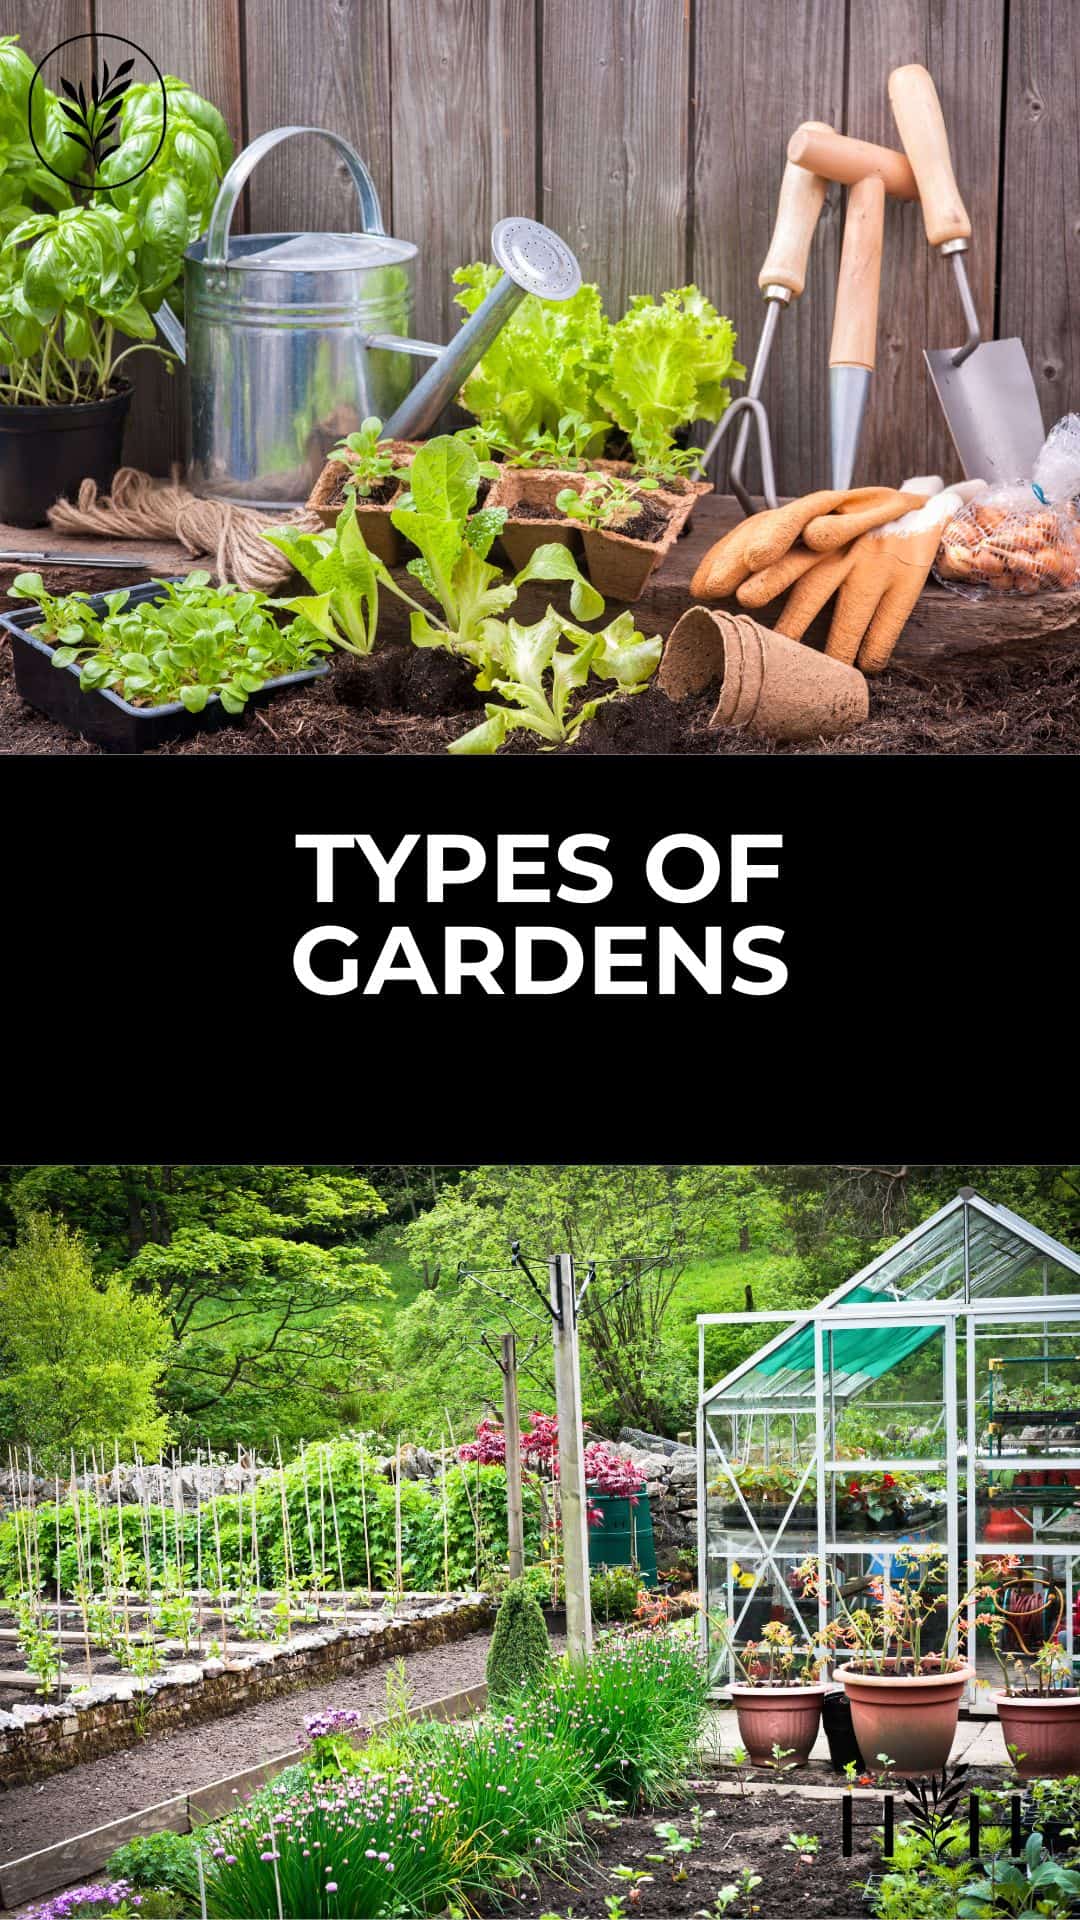 Types of gardens via @home4theharvest